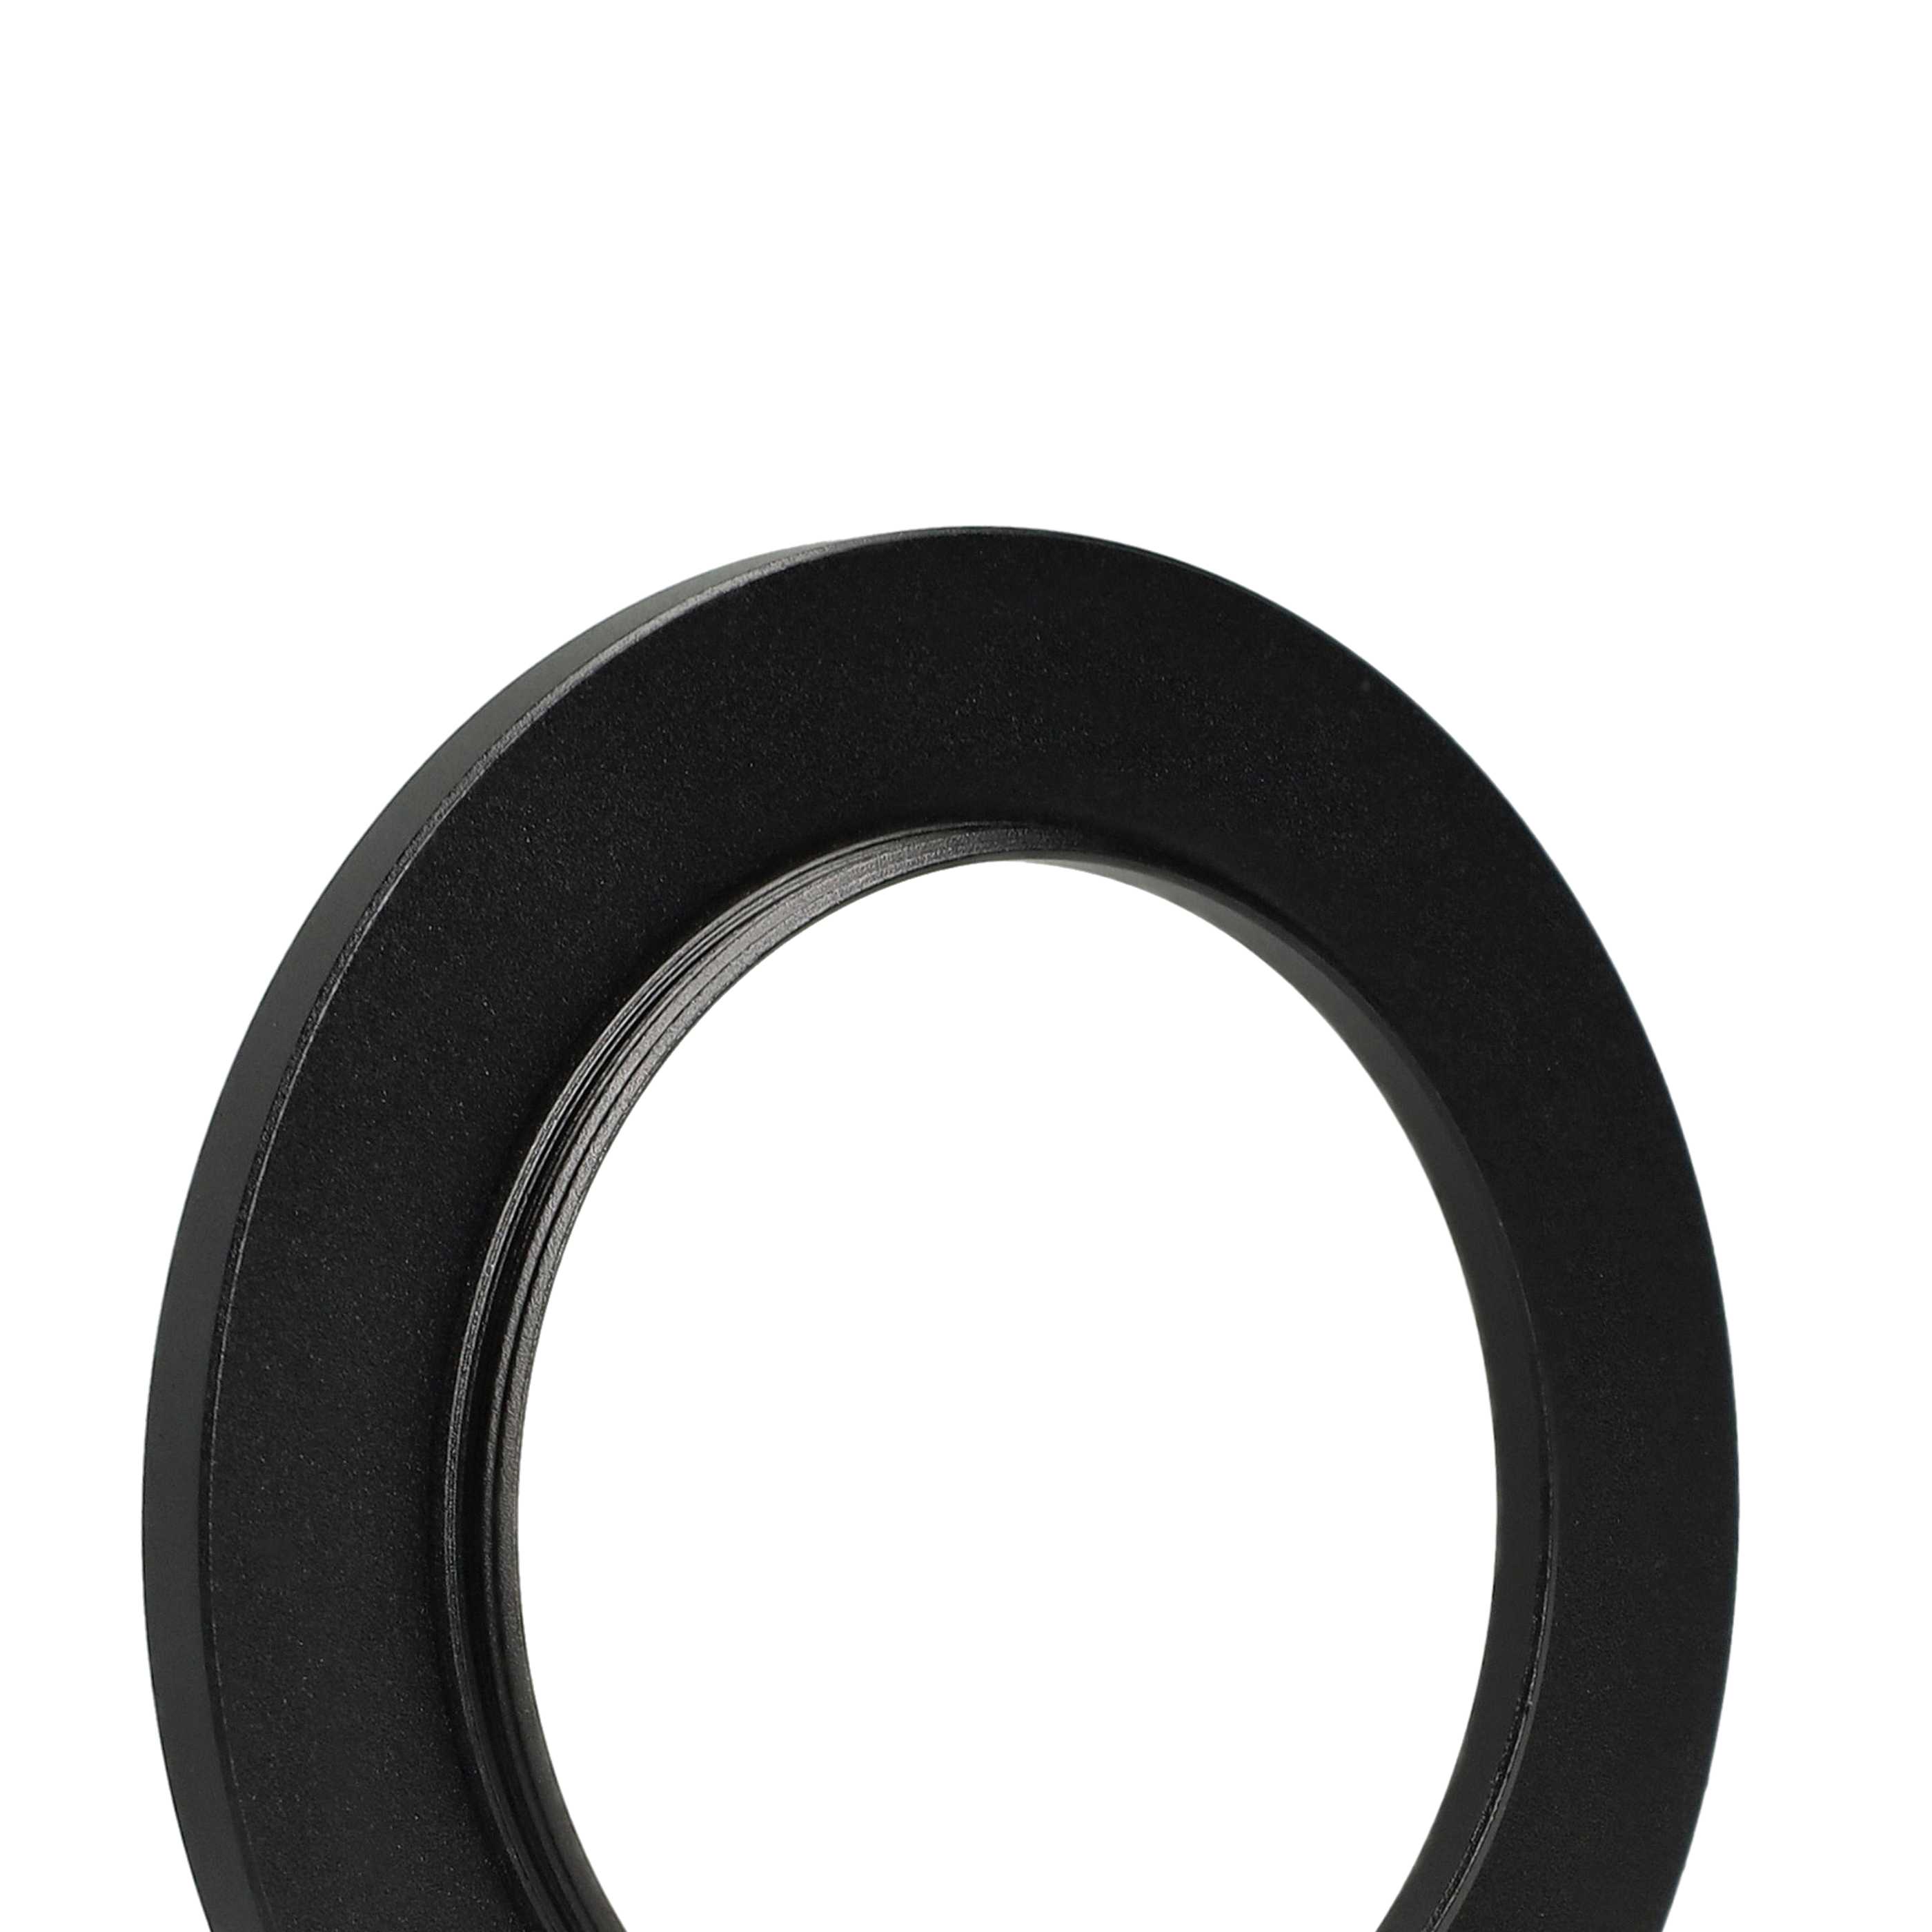 Step-Up-Ring Adapter 52 mm auf 72 mm passend für diverse Kamera-Objektive - Filteradapter